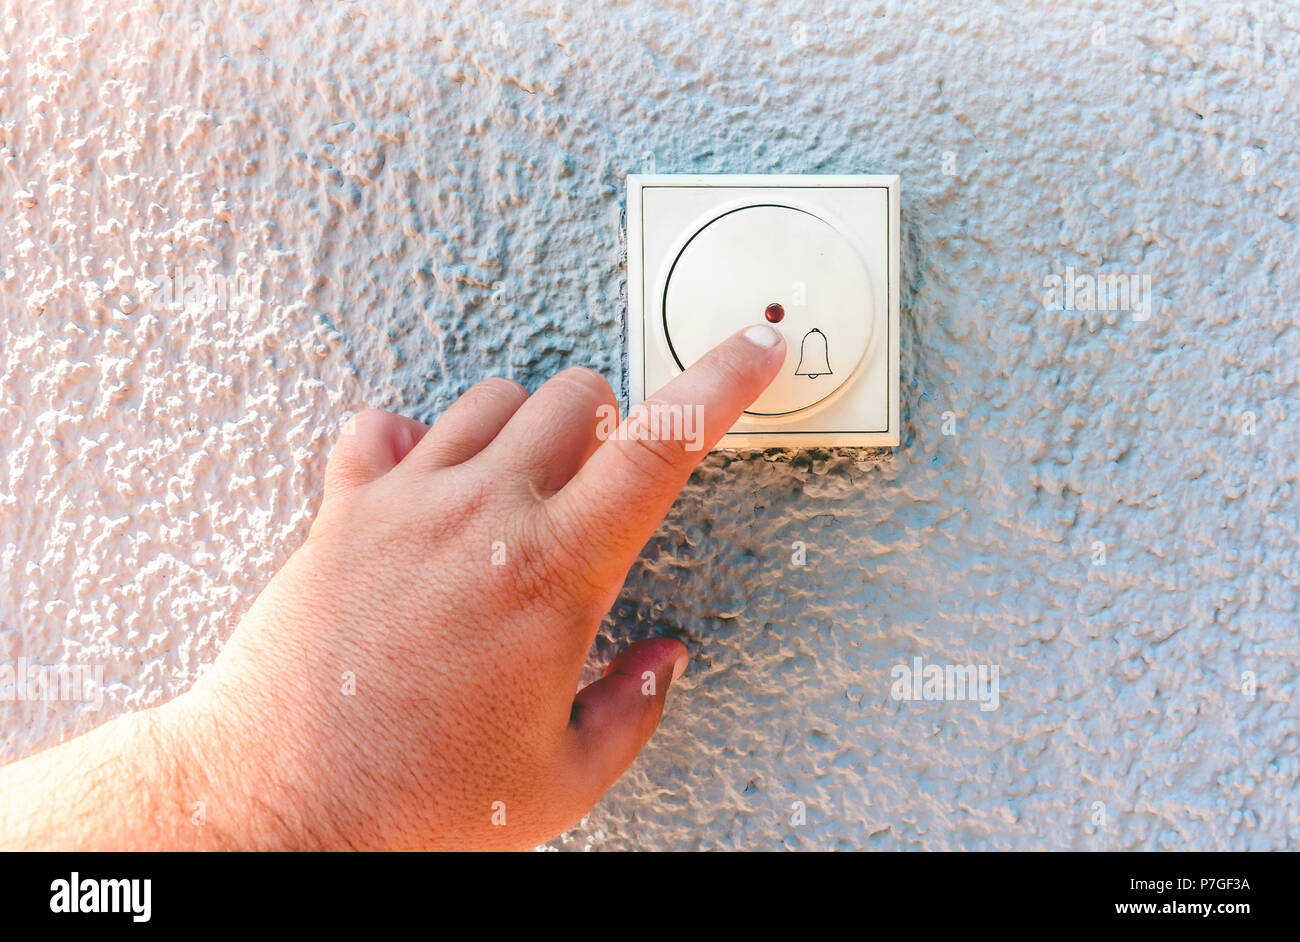 hand ringing on doorbell on pvc front door Stock Photo